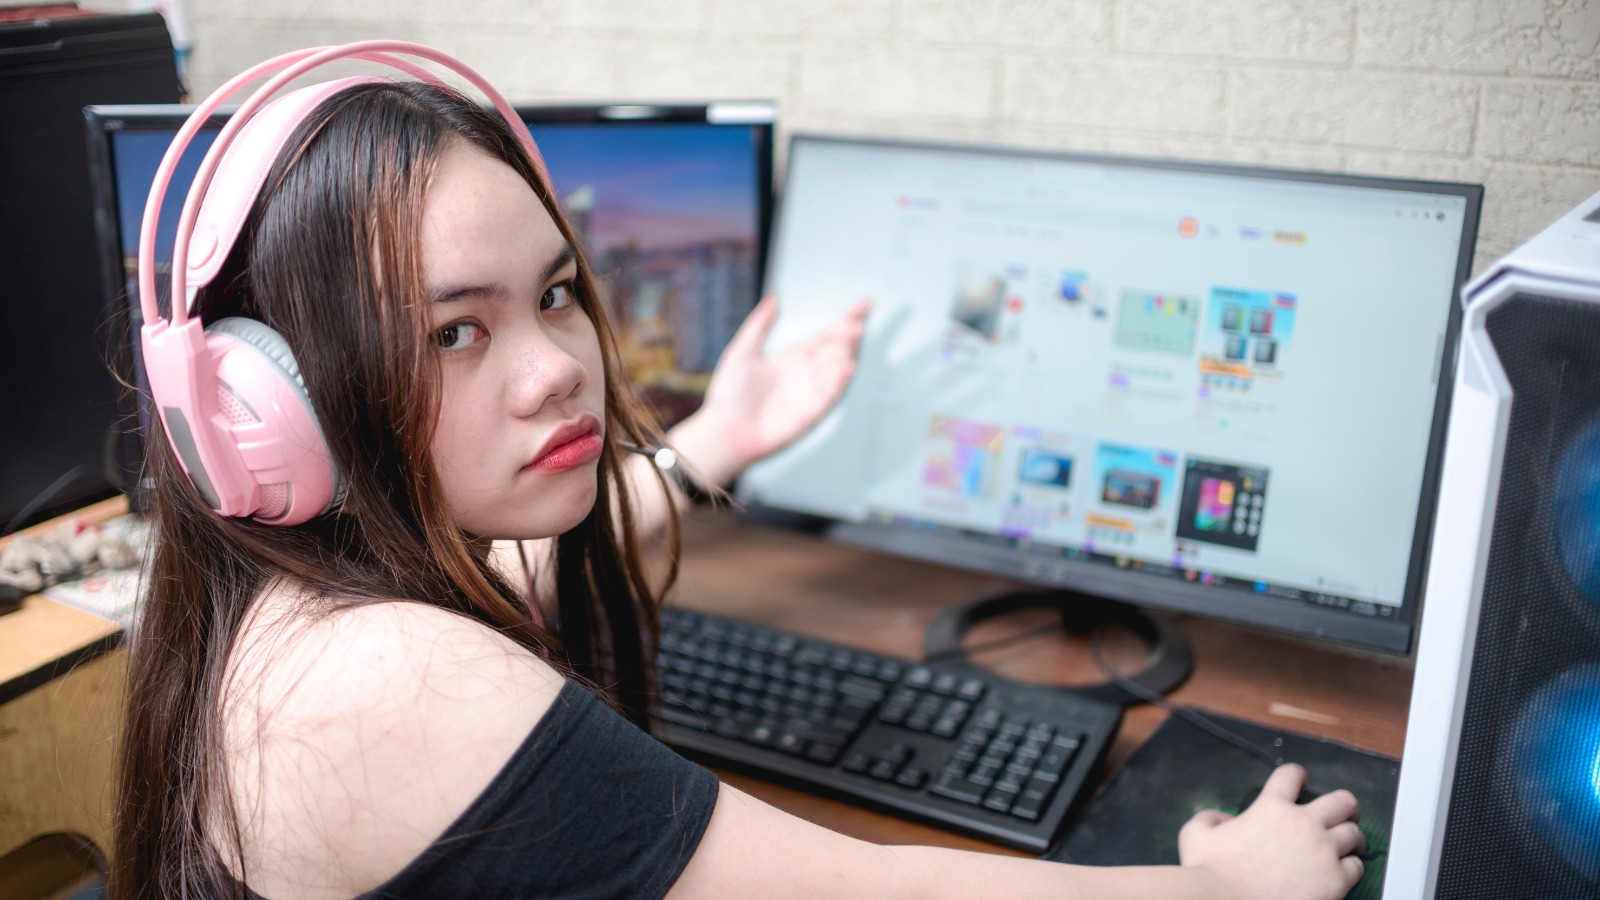 Imagem mostra um adolescente com a cara triste em frente a um computador, simbolizando a geração z